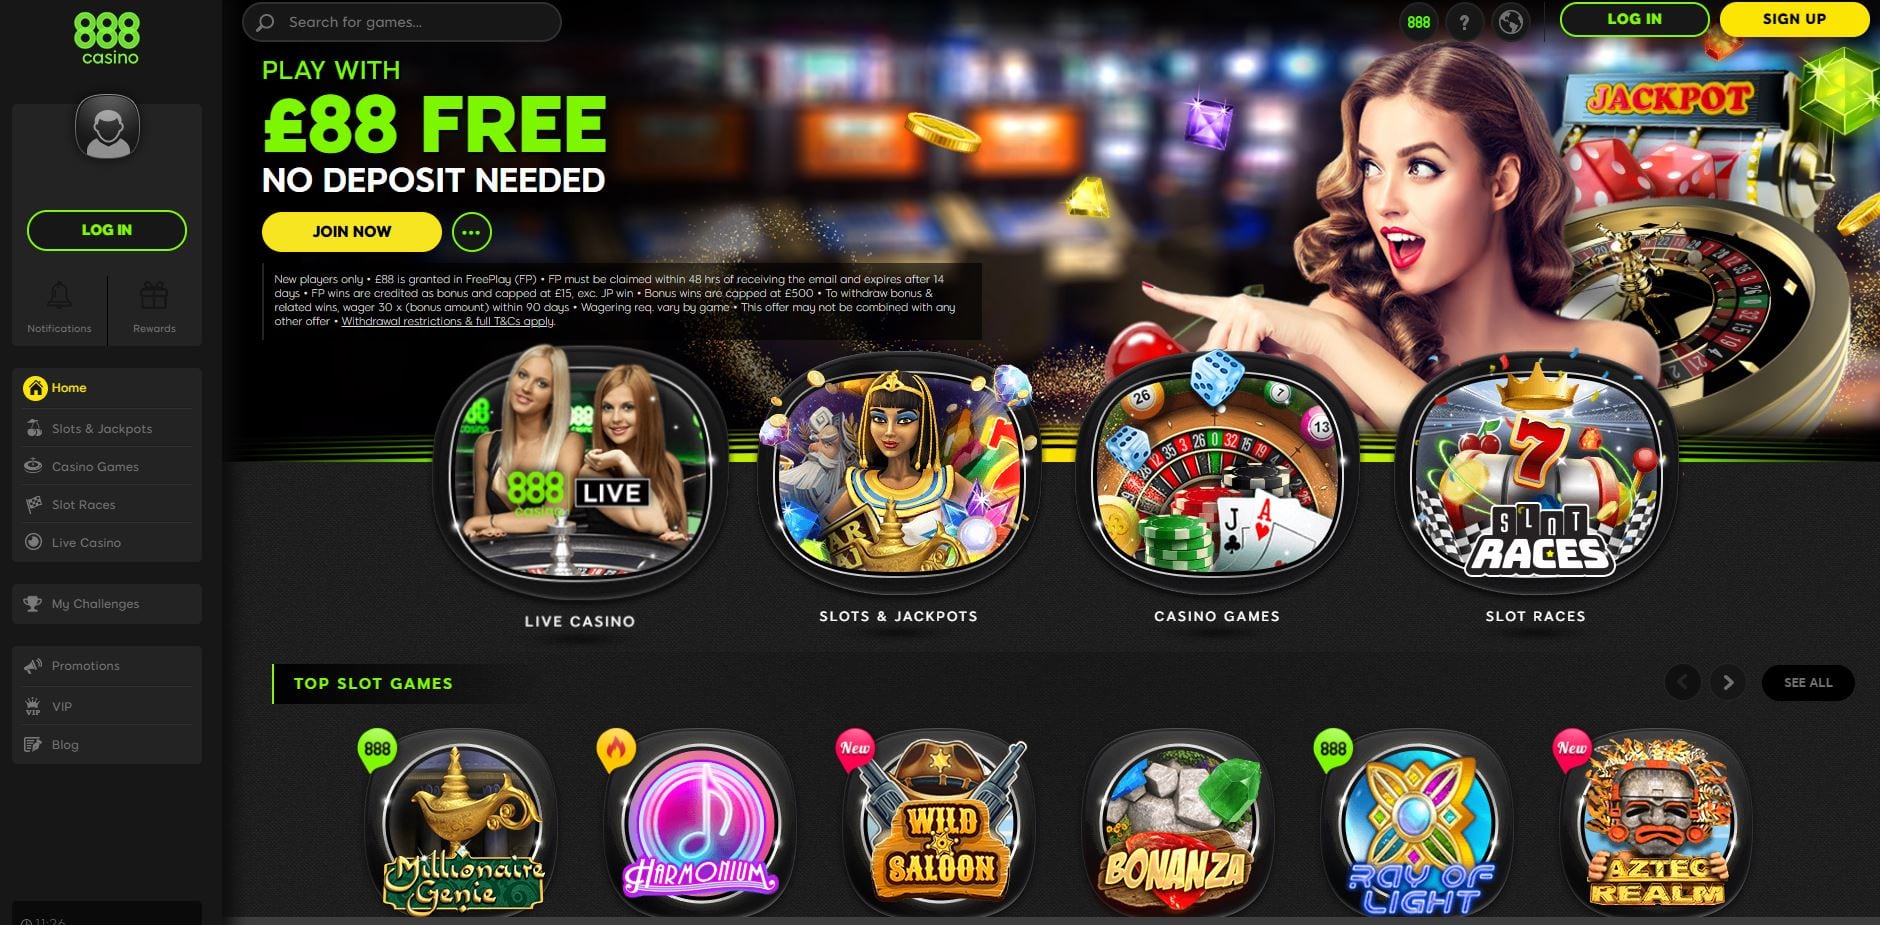 vip net games casino